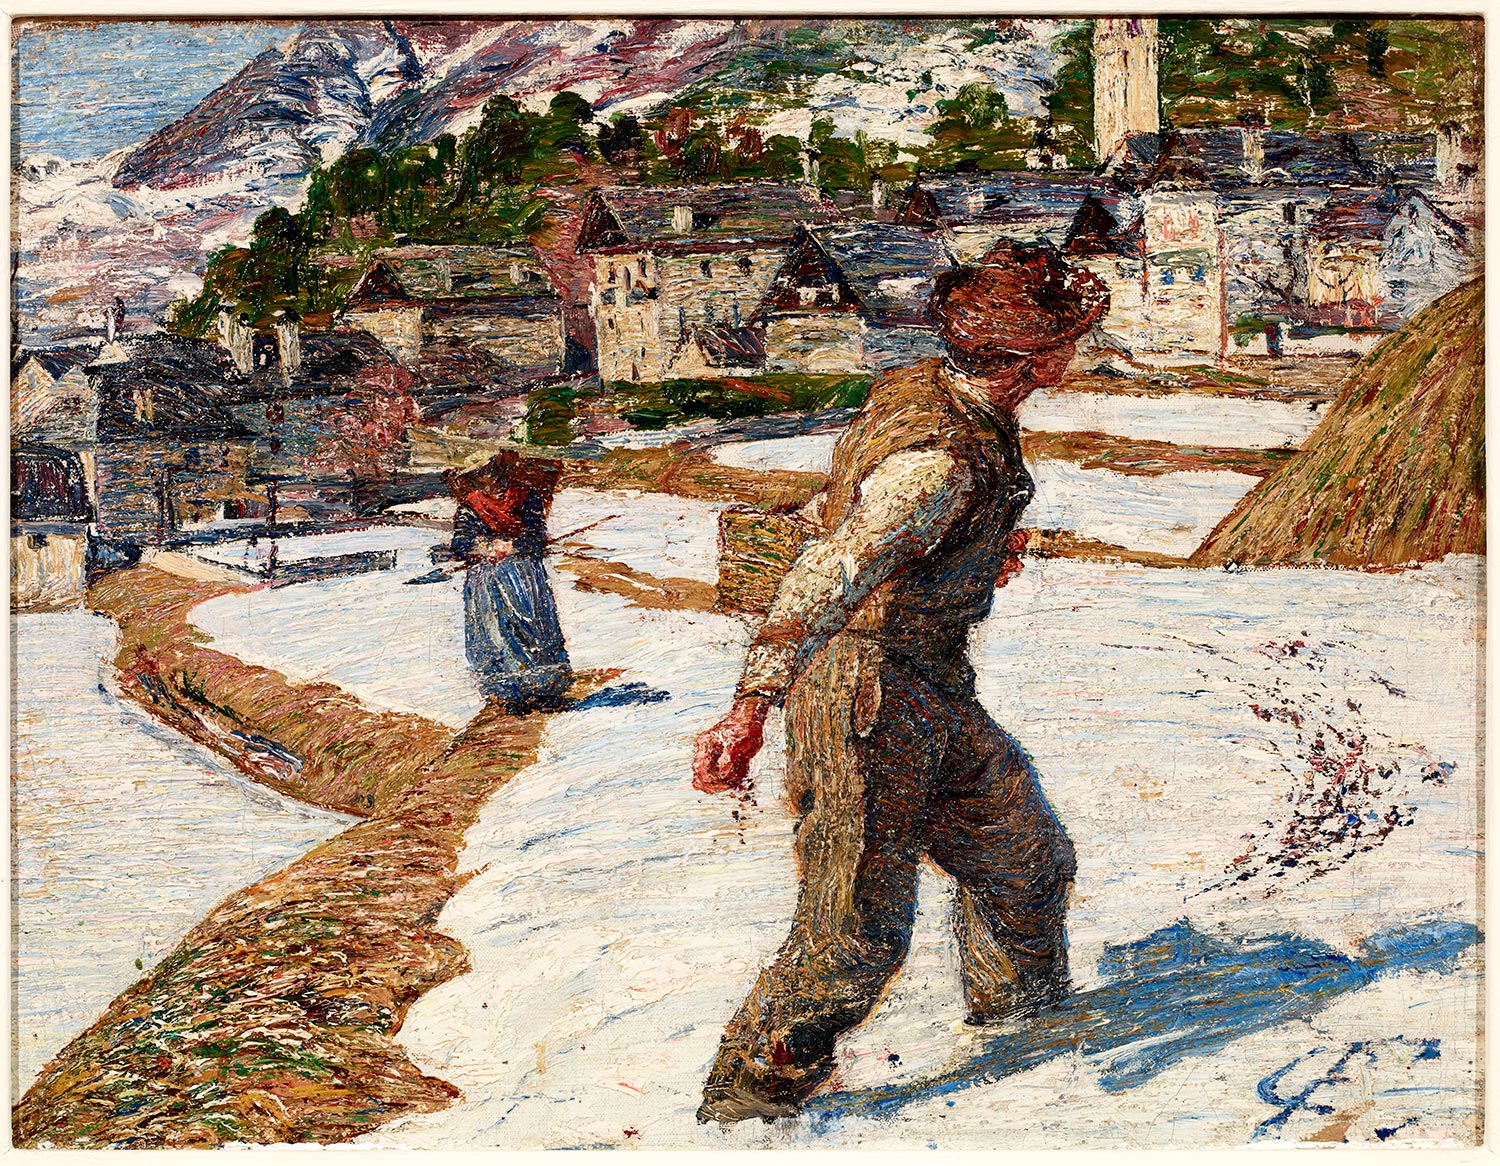 Carlo Fornara, Il seminatore, 1896-1897, olio su tela, 26,5x34,5 cm, Pinacoteca Fondazione C.R. Tortona